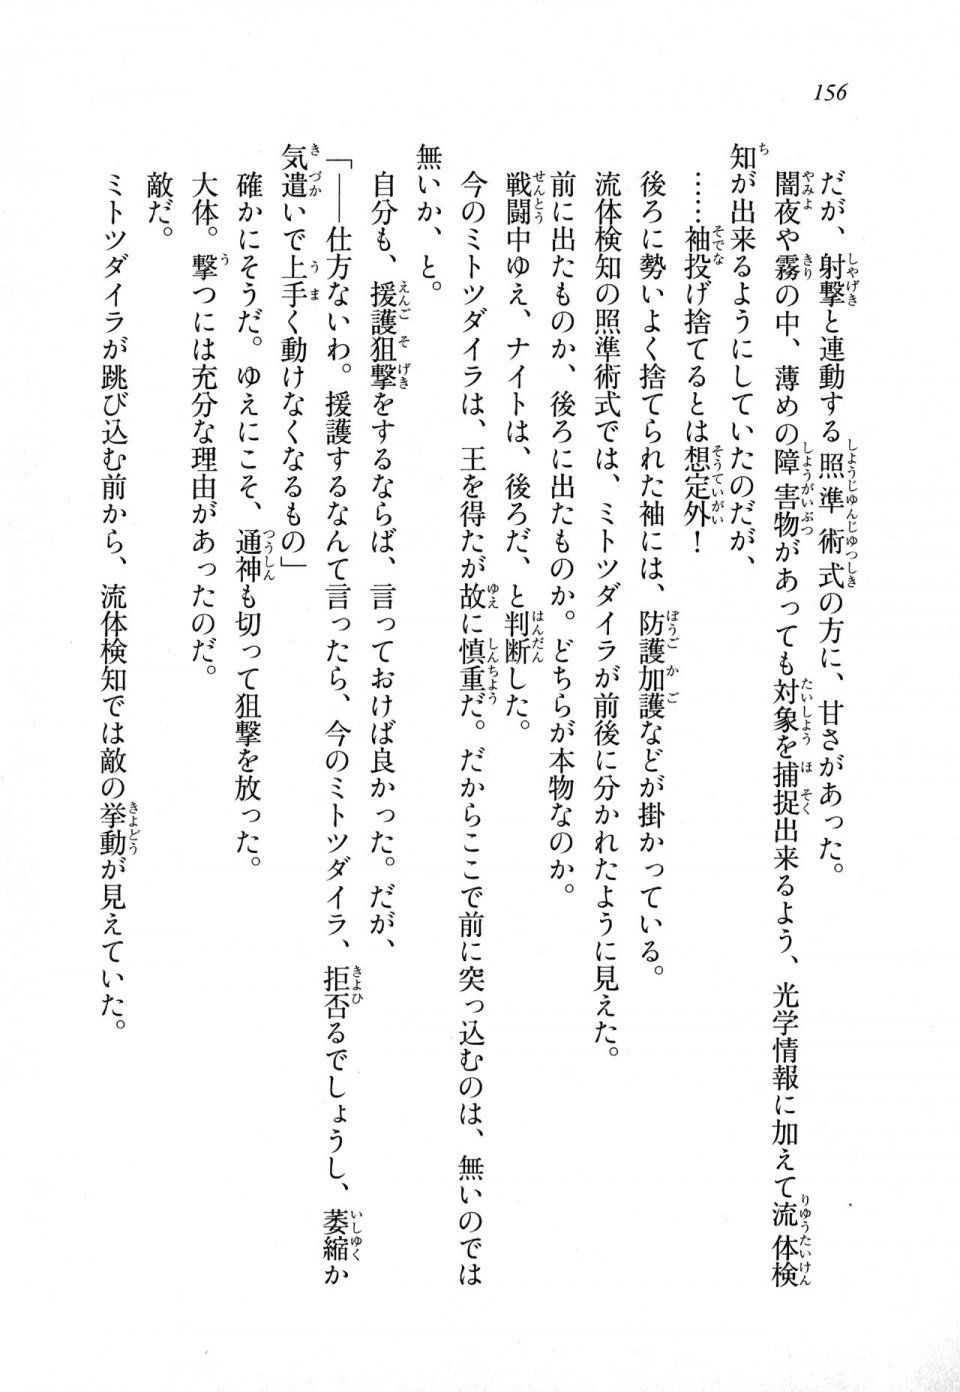 Kyoukai Senjou no Horizon LN Sidestory Vol 1 - Photo #154